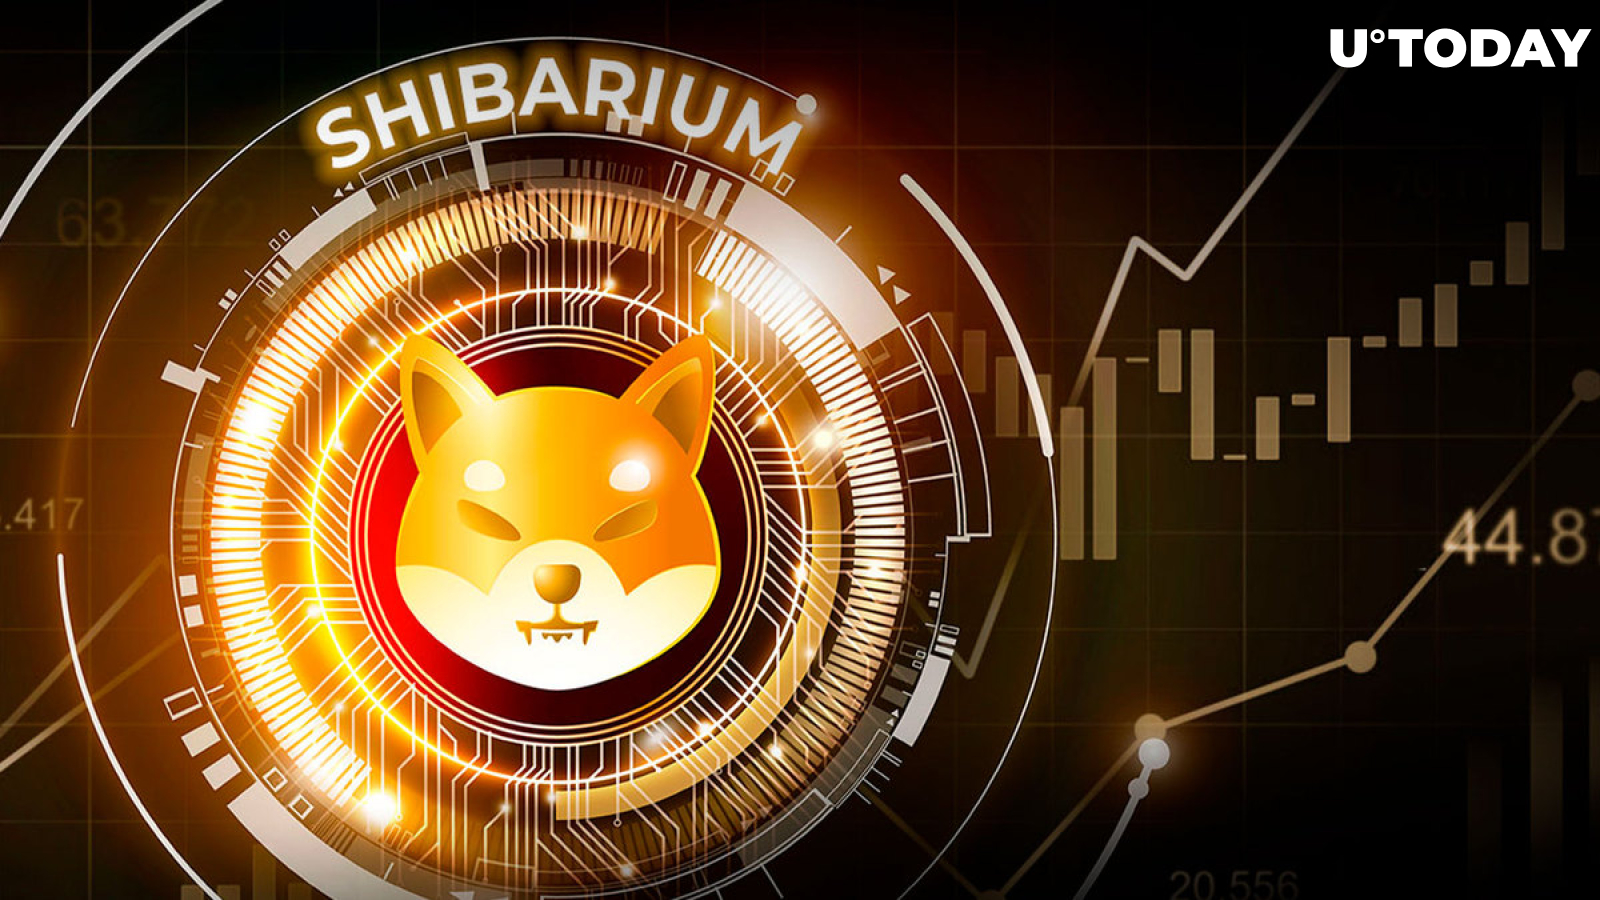 Shiba Inu: Shibarium Set to Hit Big Utility Milestone